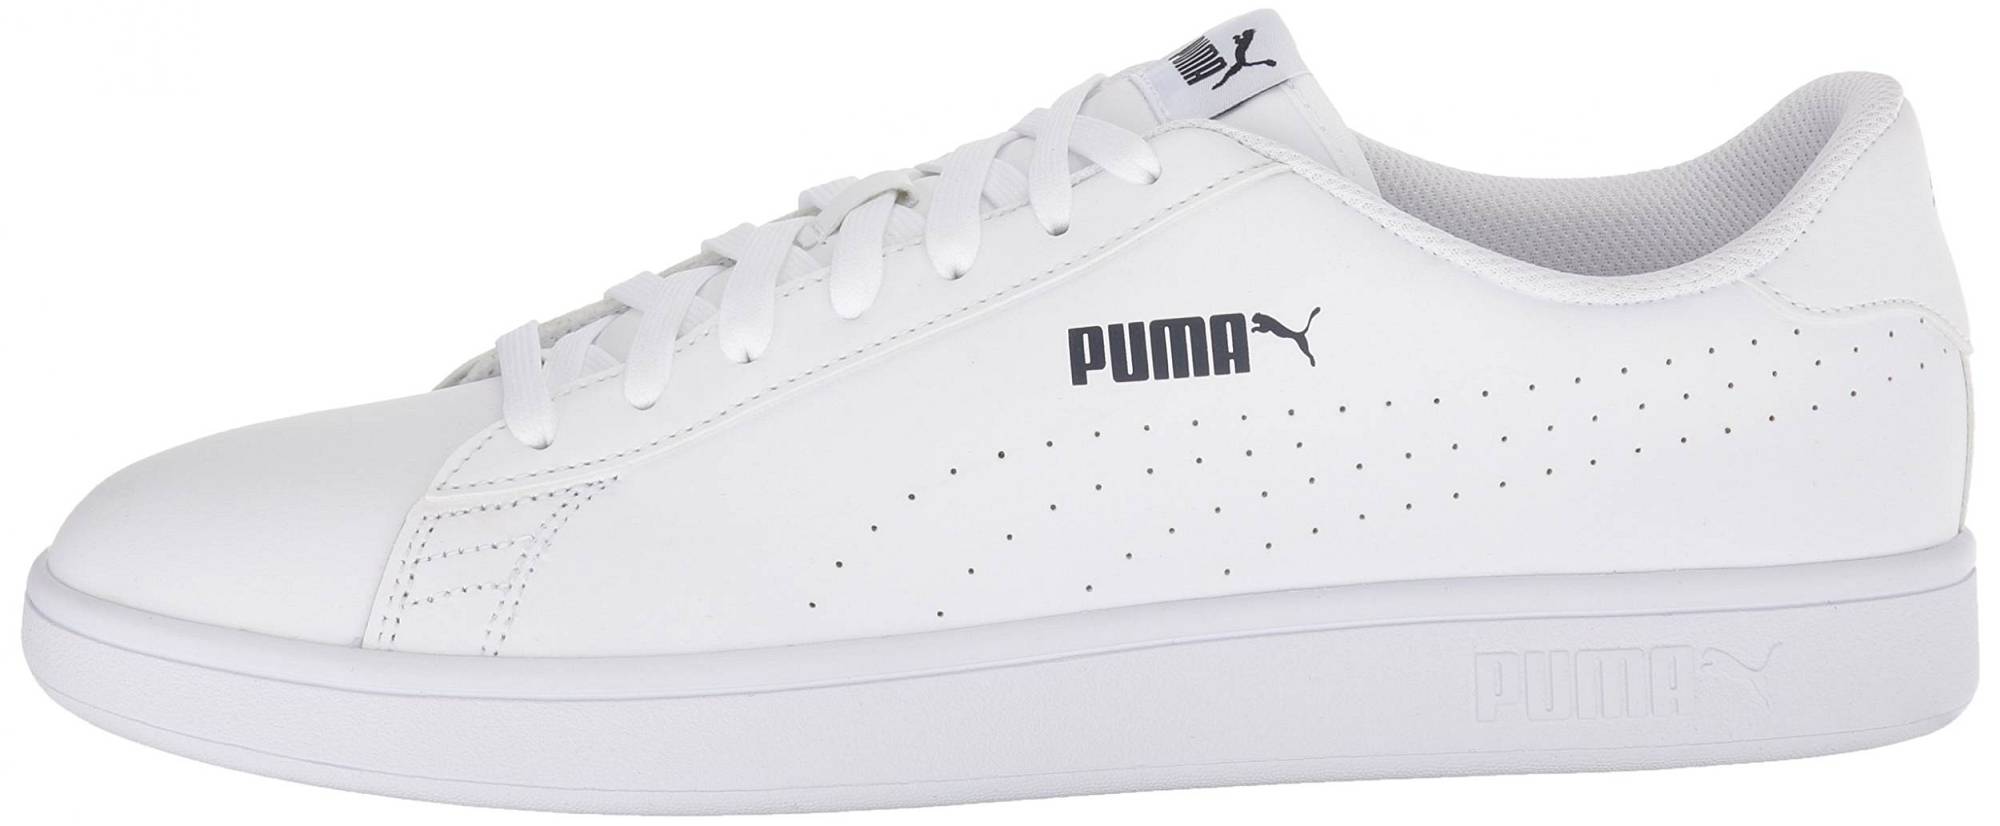 Puma Smash v2 L Perf – Shoes Reviews & Reasons To Buy